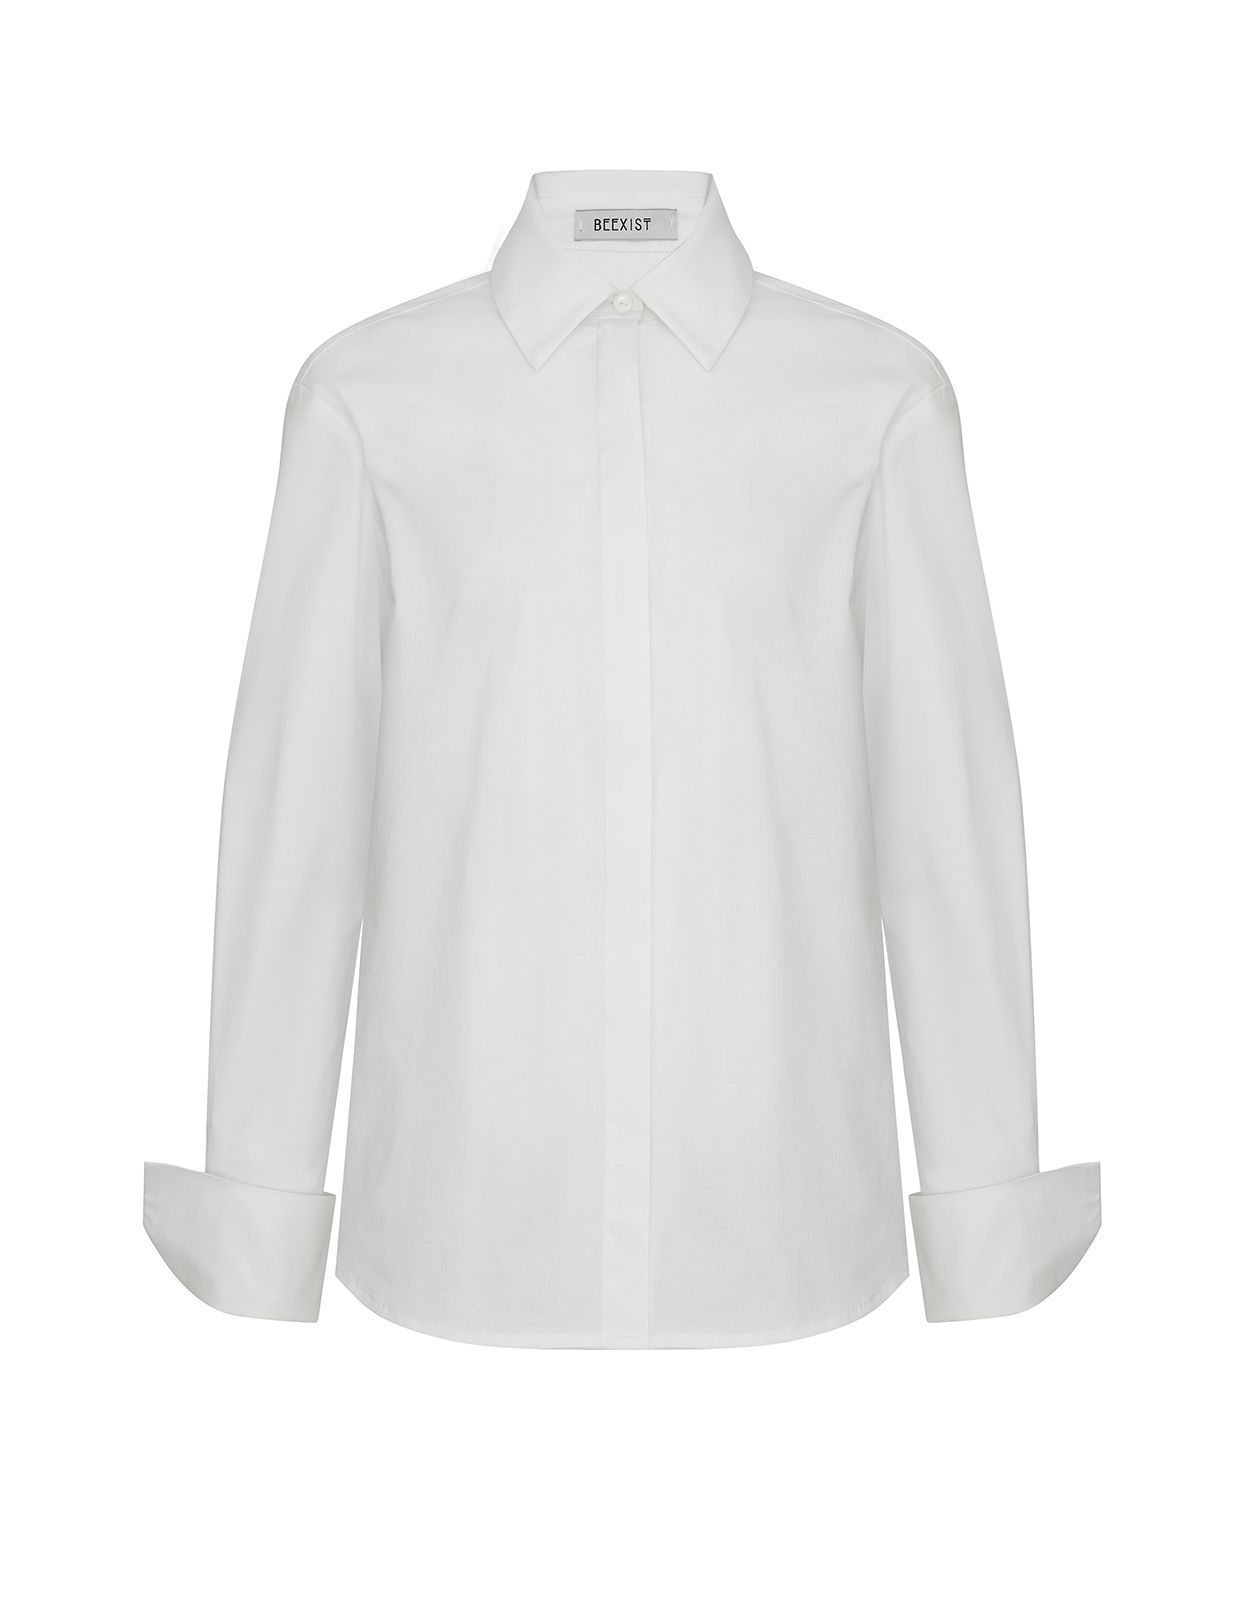 Рубашка прямого силуэта с широкими манжетами белая, купить рубашка прямого силуэта с широкими манжетами белая 